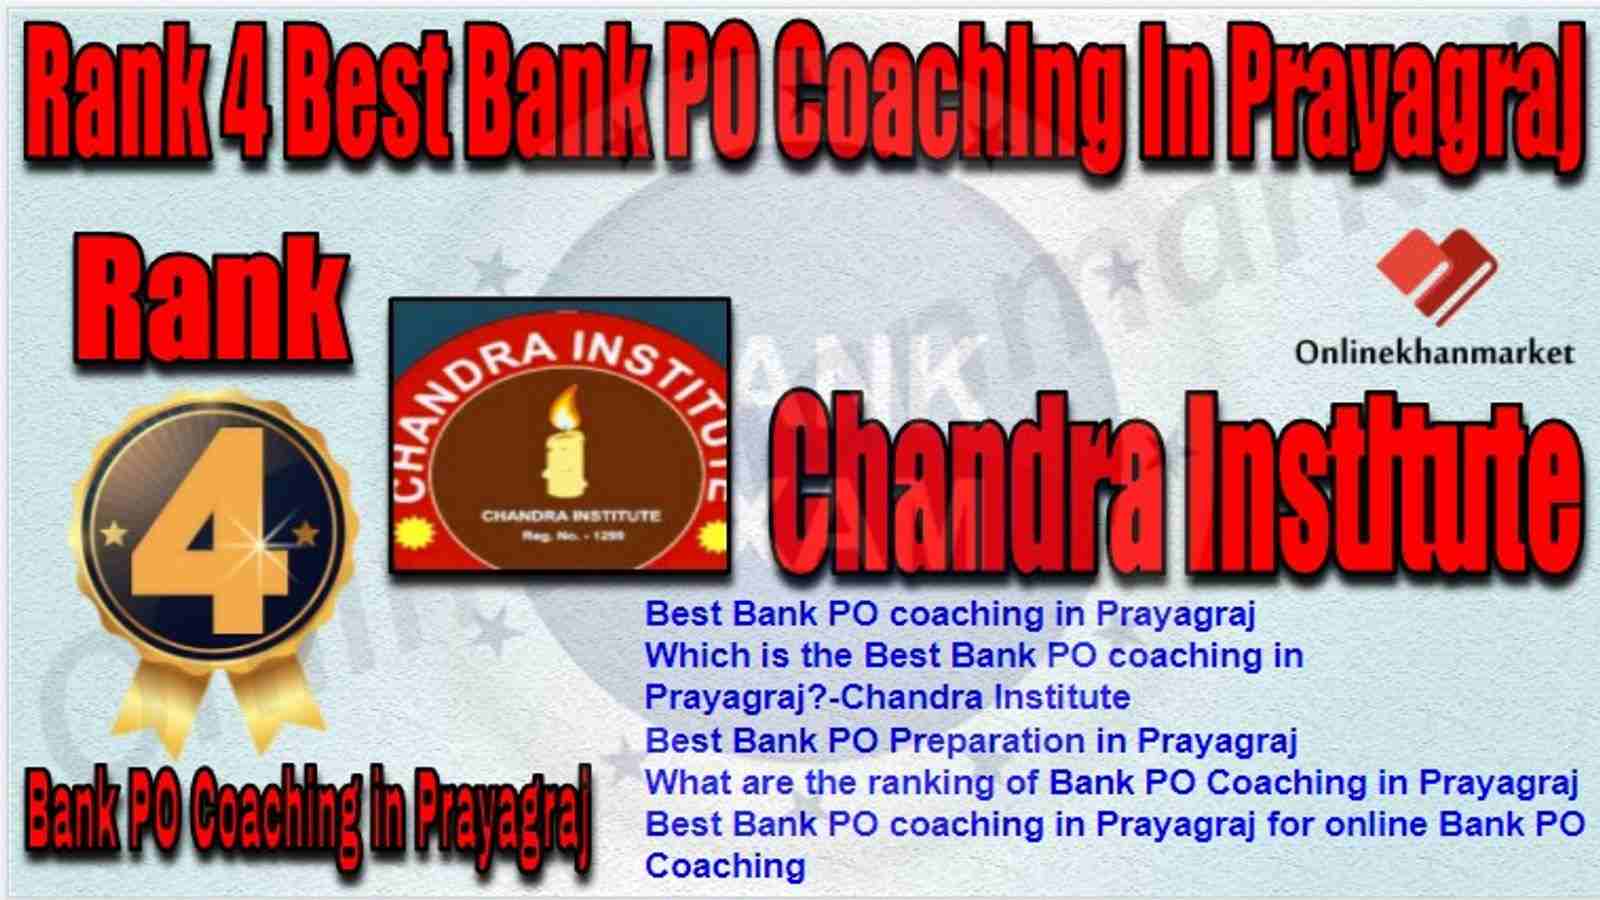 Rank 4 Best Bank PO Coaching in prayagraj